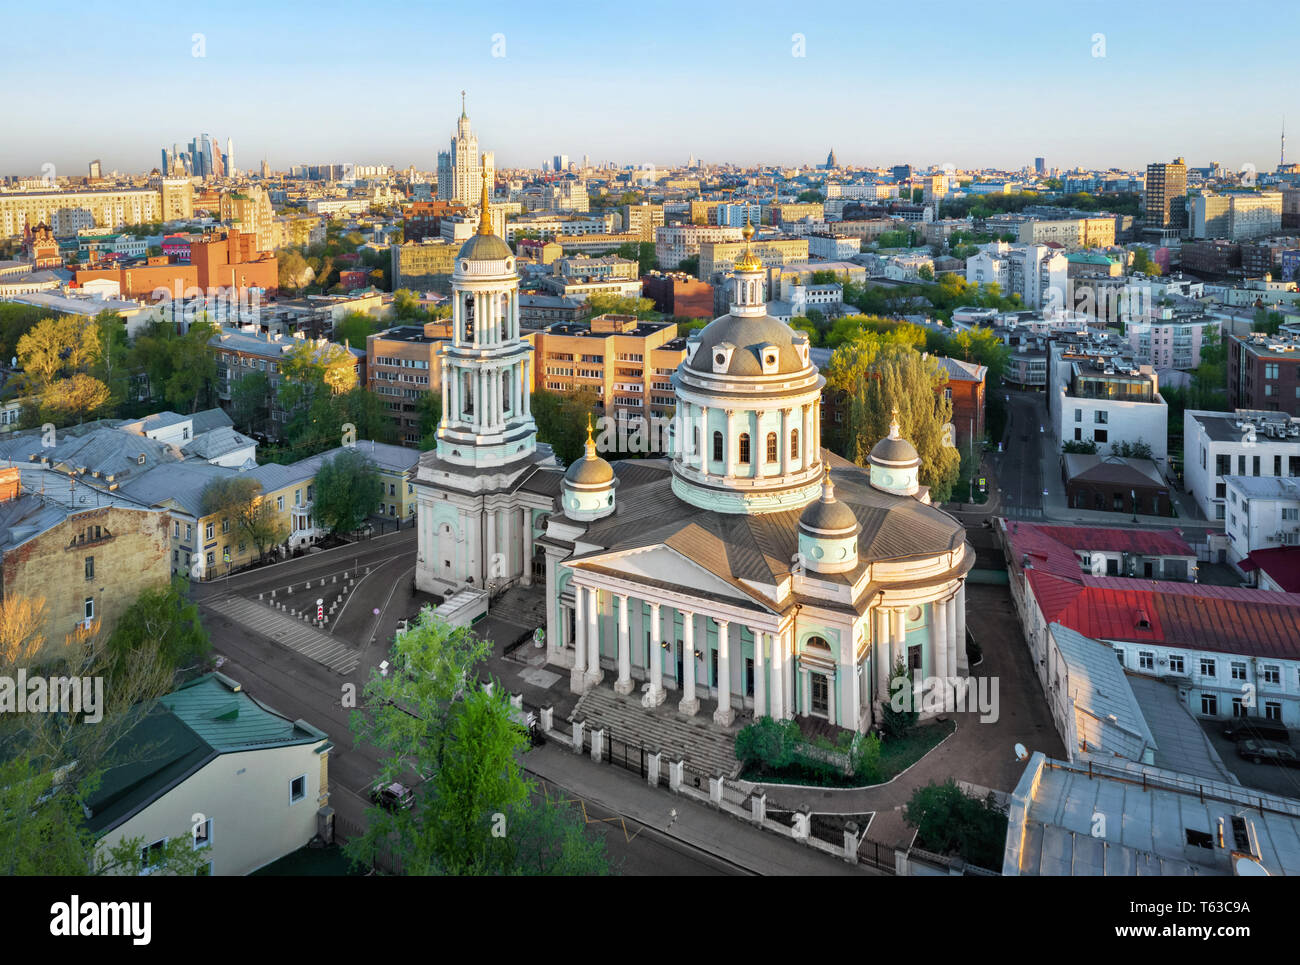 Vue aérienne du Temple de Saint Martin le confesseur, Moscou, Russie Banque D'Images